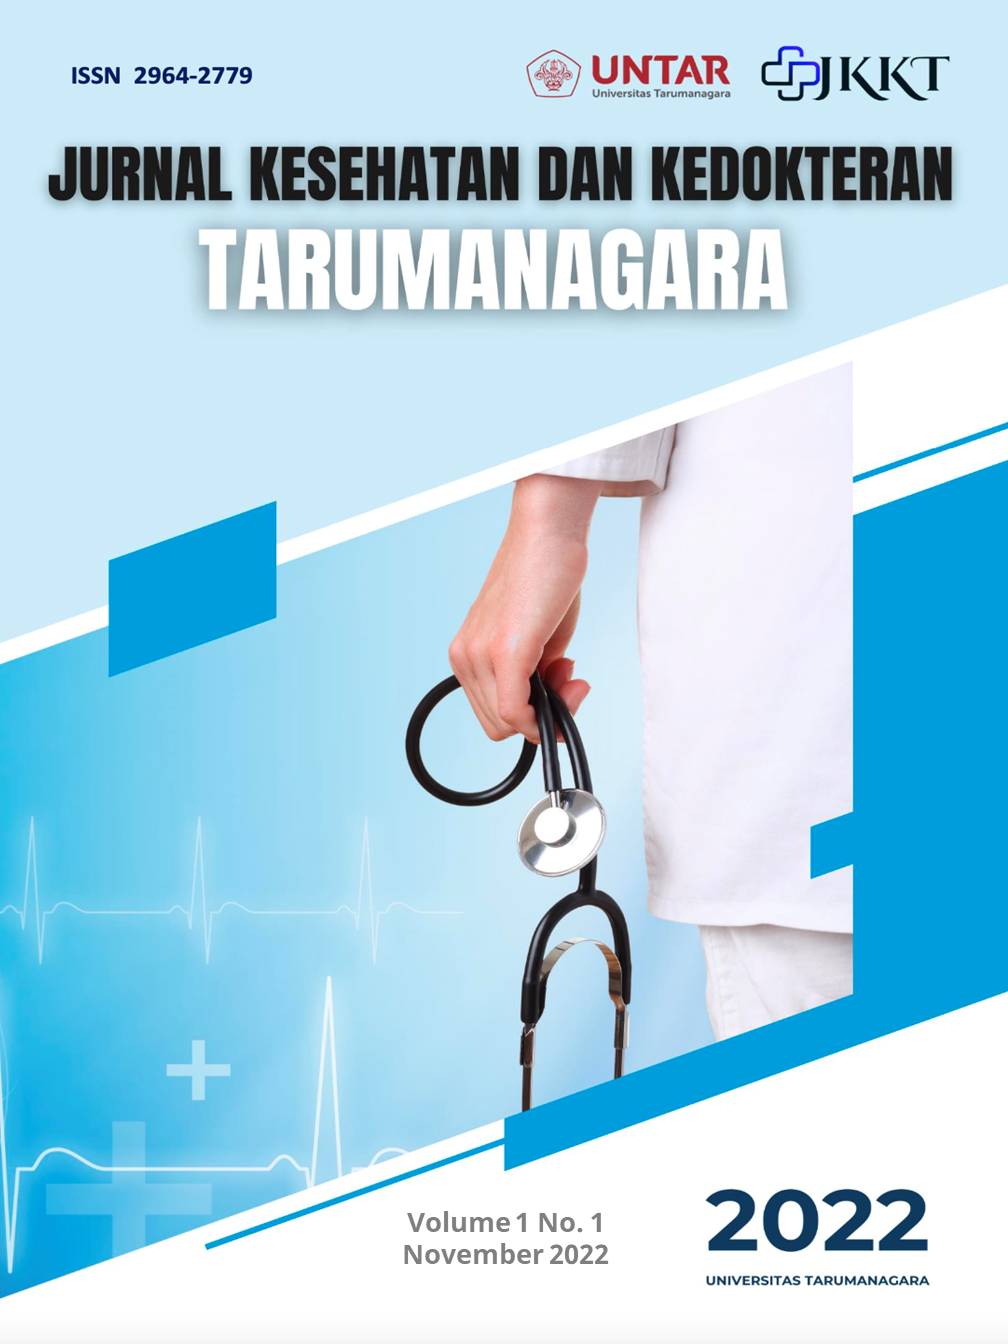 					Lihat Vol 1 No 1 November - April (2022): Jurnal Kesehatan dan Kedokteran Tarumanegara
				